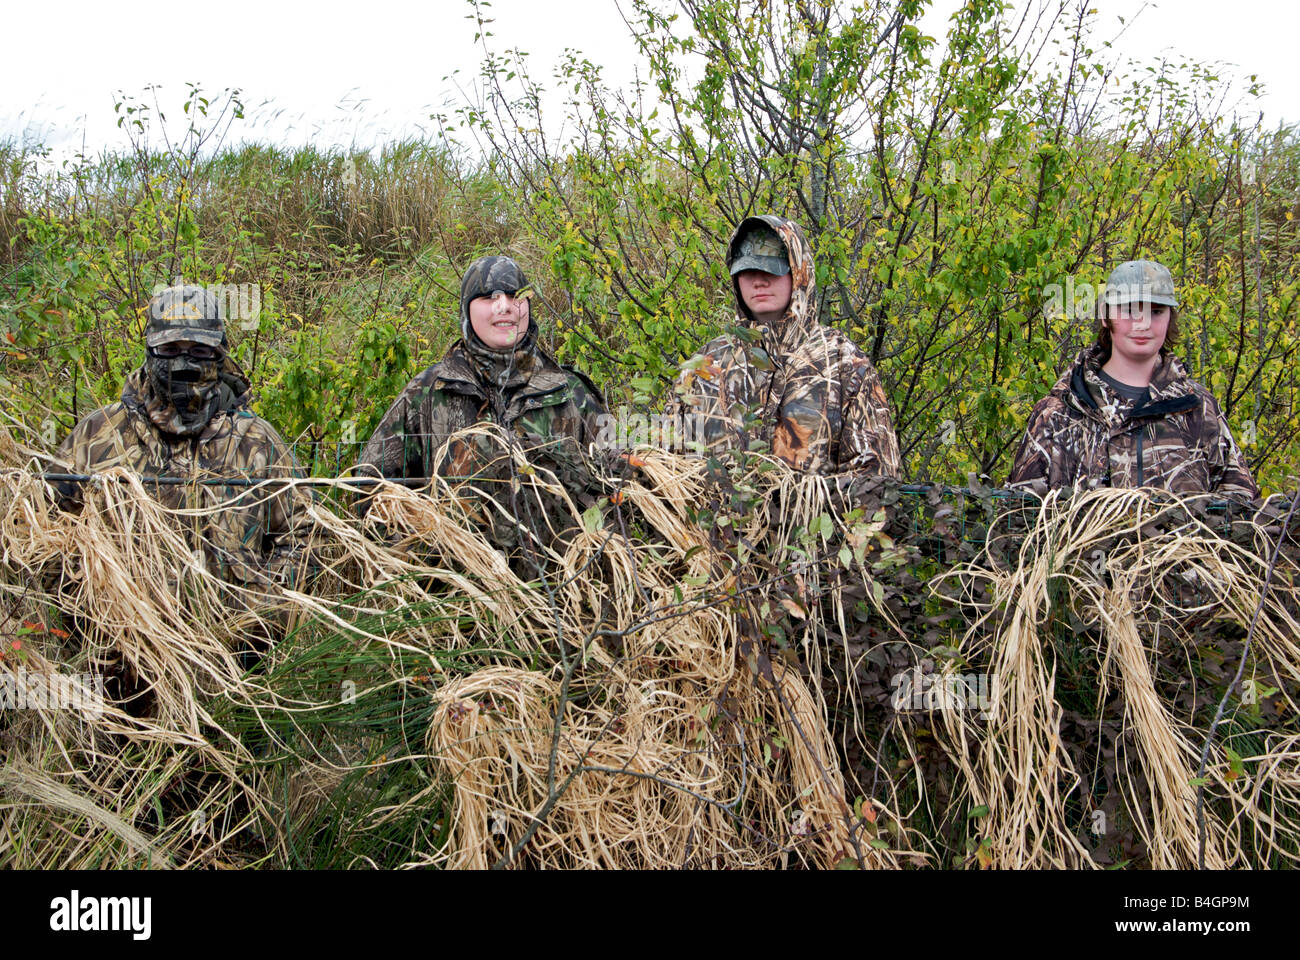 Los adolescentes vestidos de camuflaje ropa en un pato ciego durante un programa para introducir a los jóvenes de caza Foto de stock